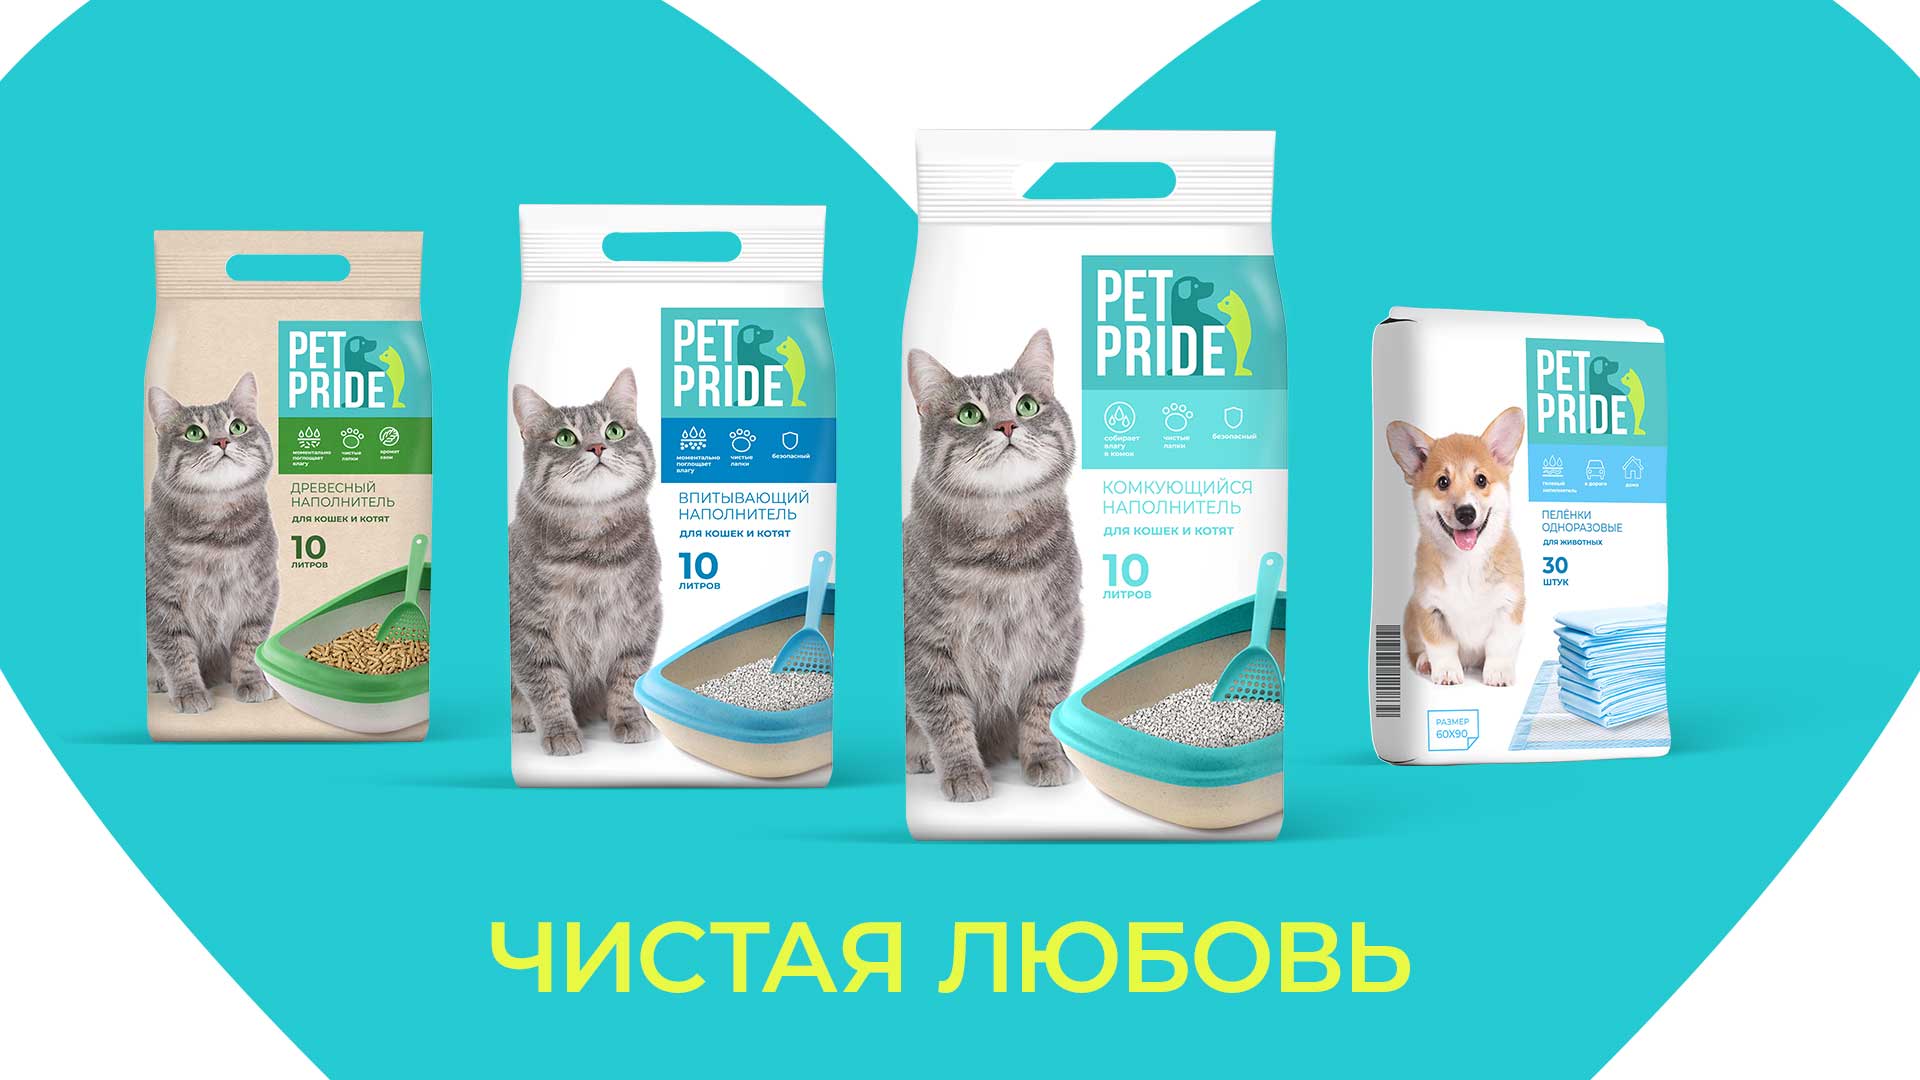 Дизайн упаковки бренда гигиены для животных Pet Pride